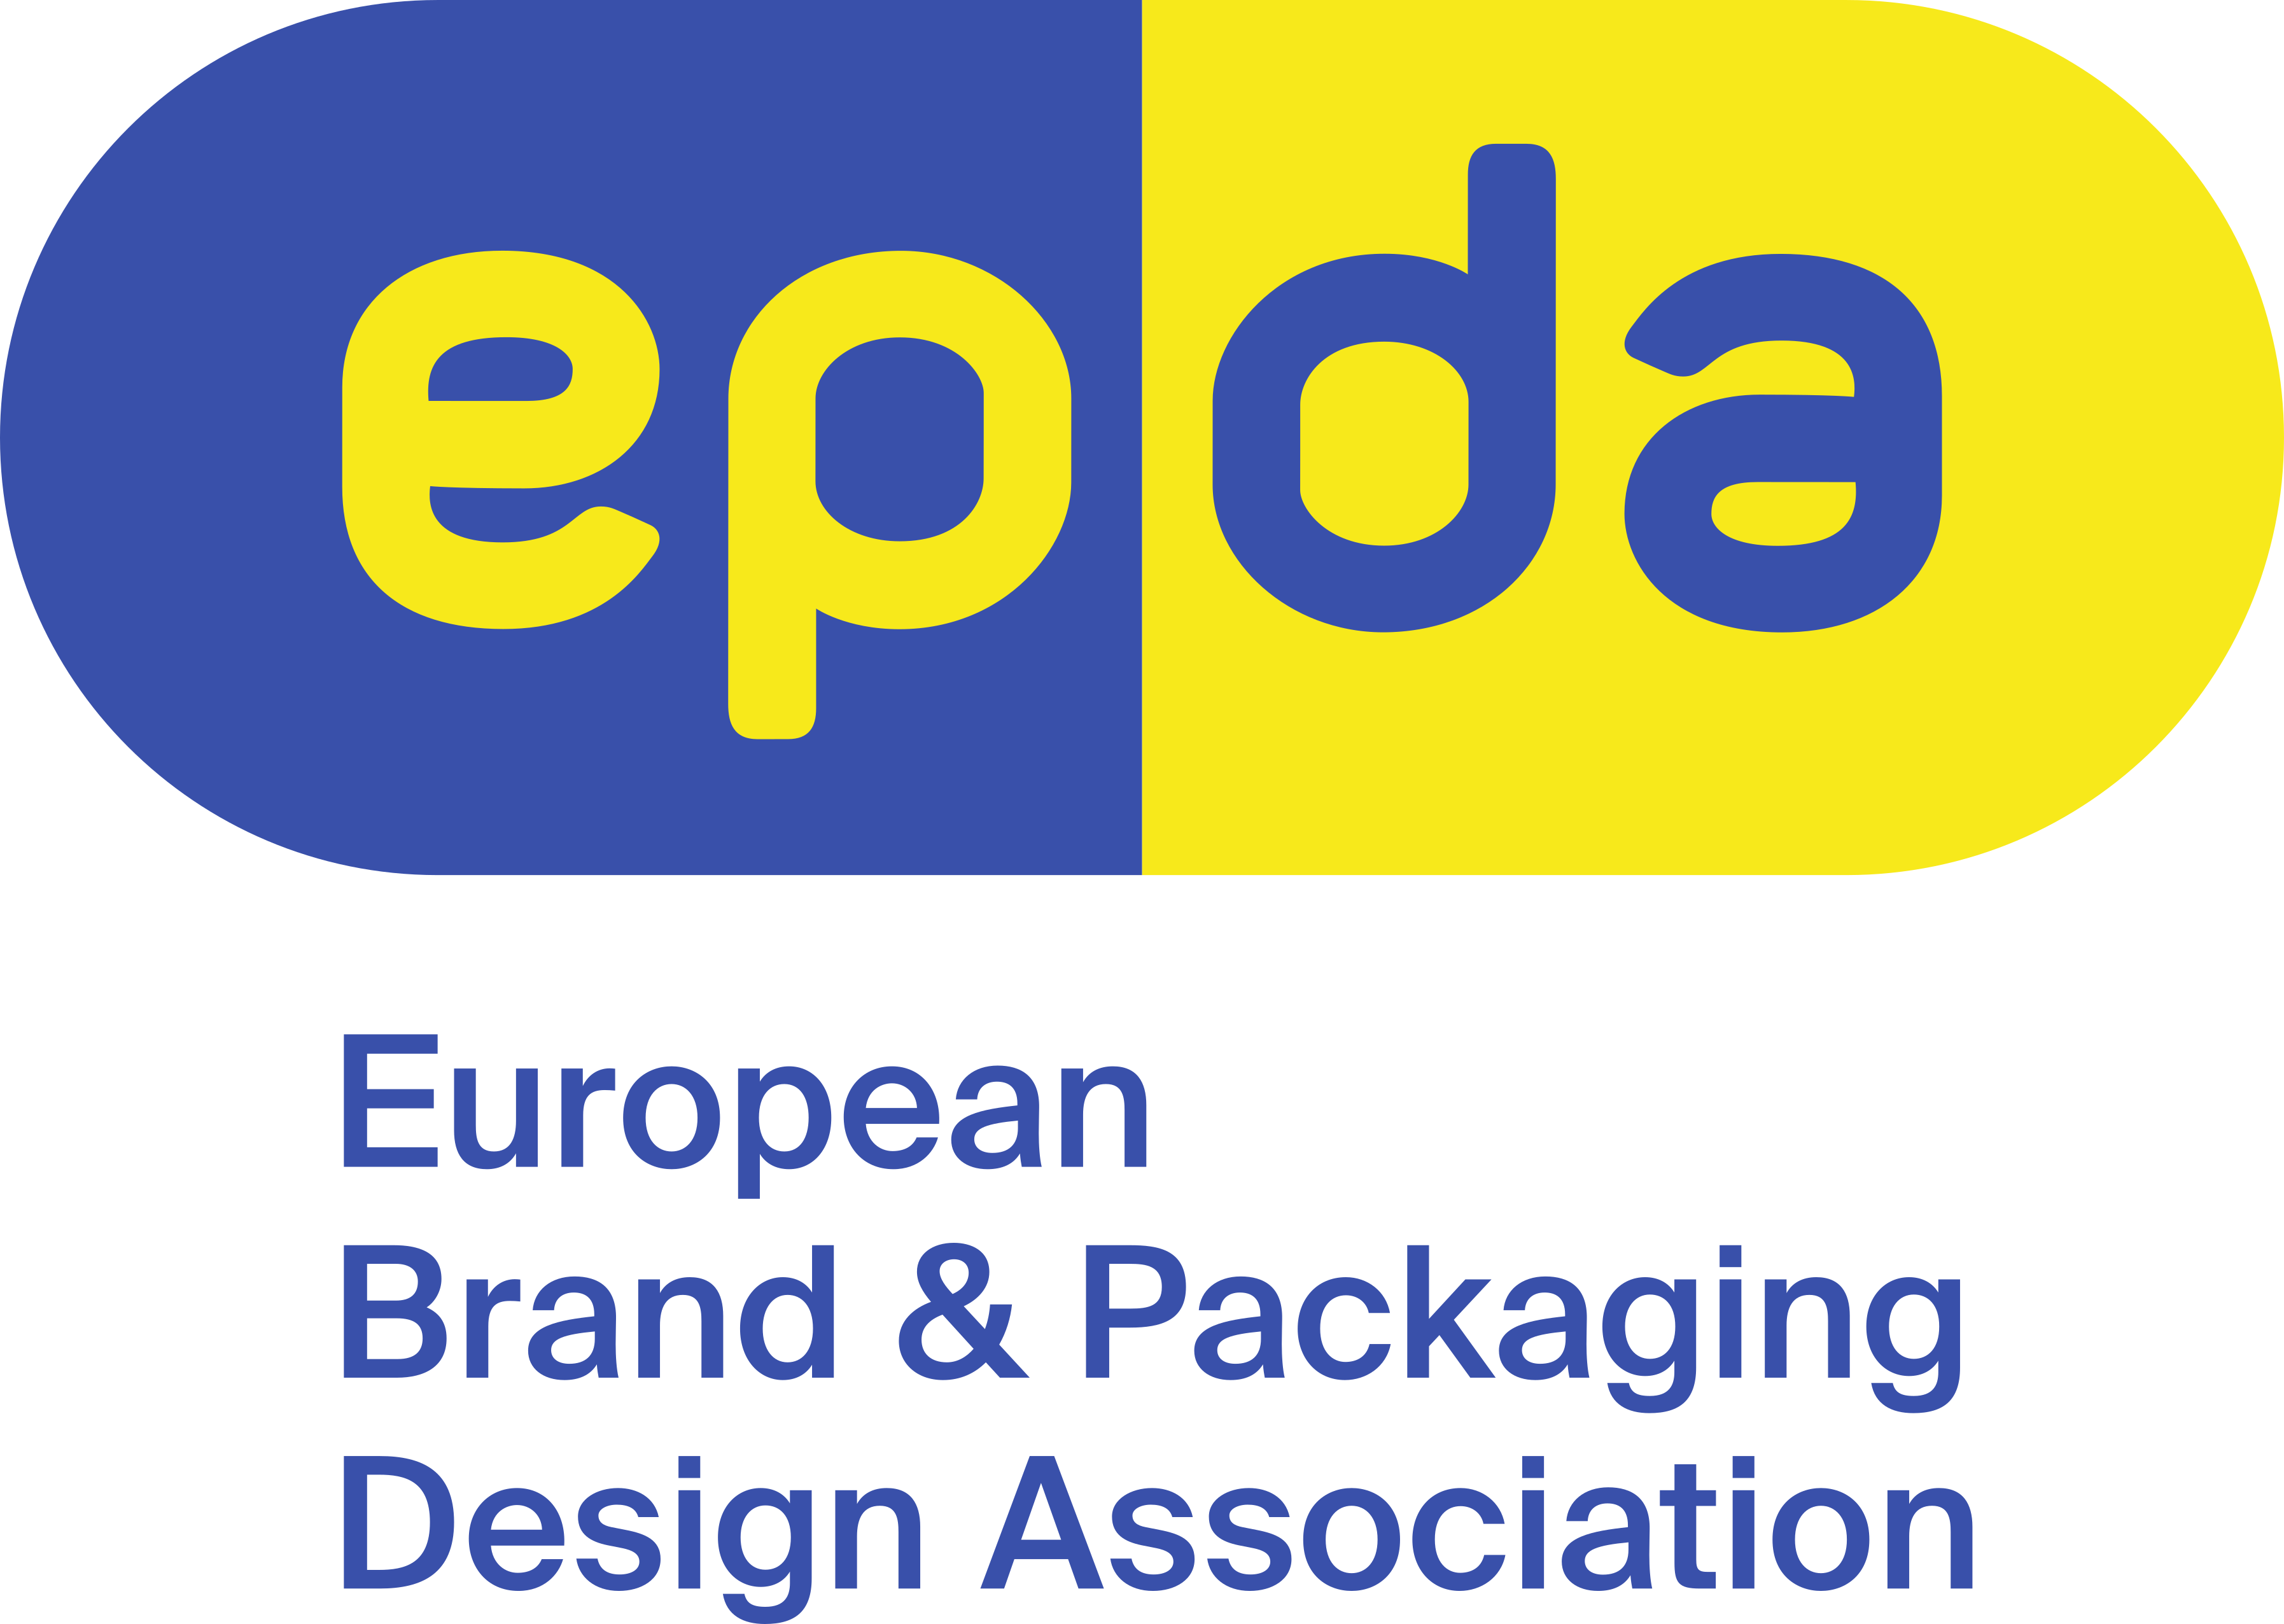 epda_logo_descriptor1_rgb